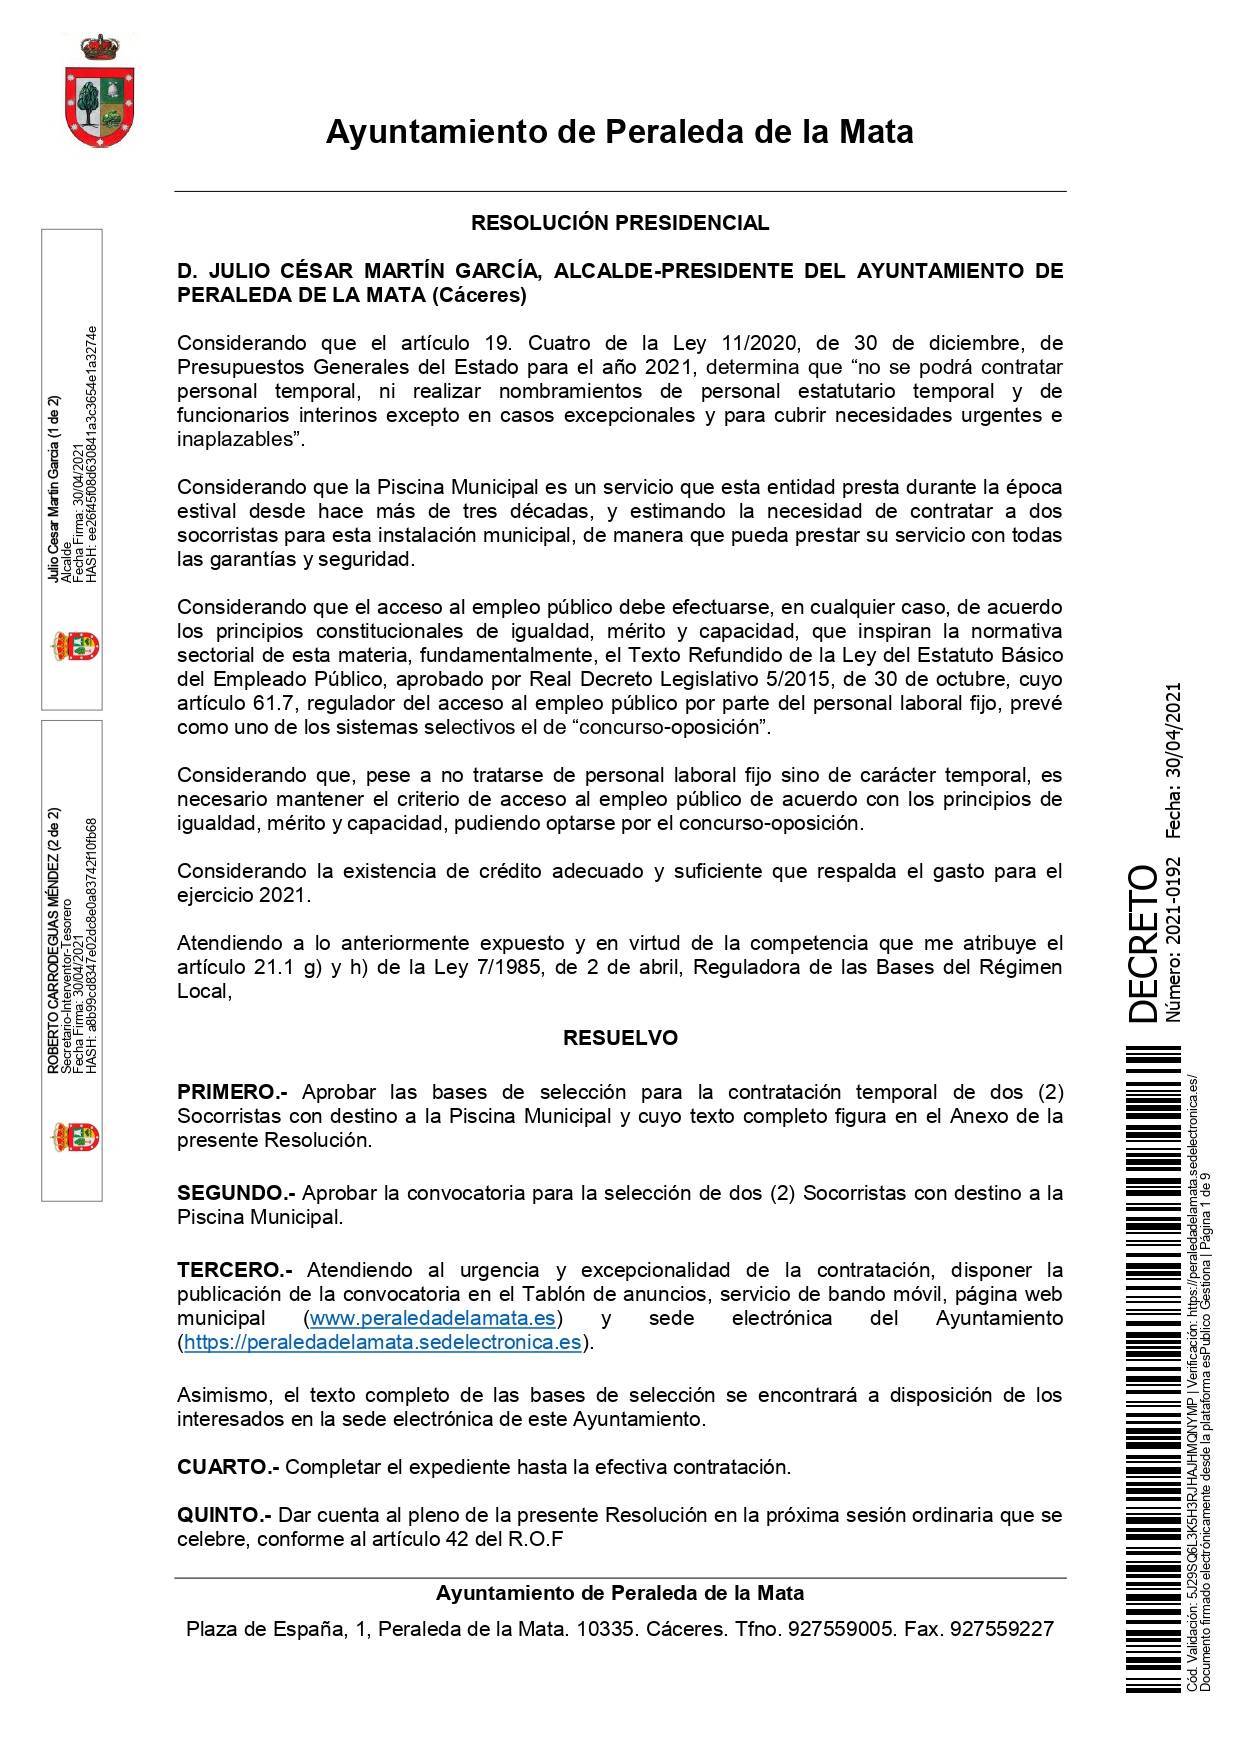 2 socorristas para la piscina municipal (2021) - Peraleda de la Mata (Cáceres) 1